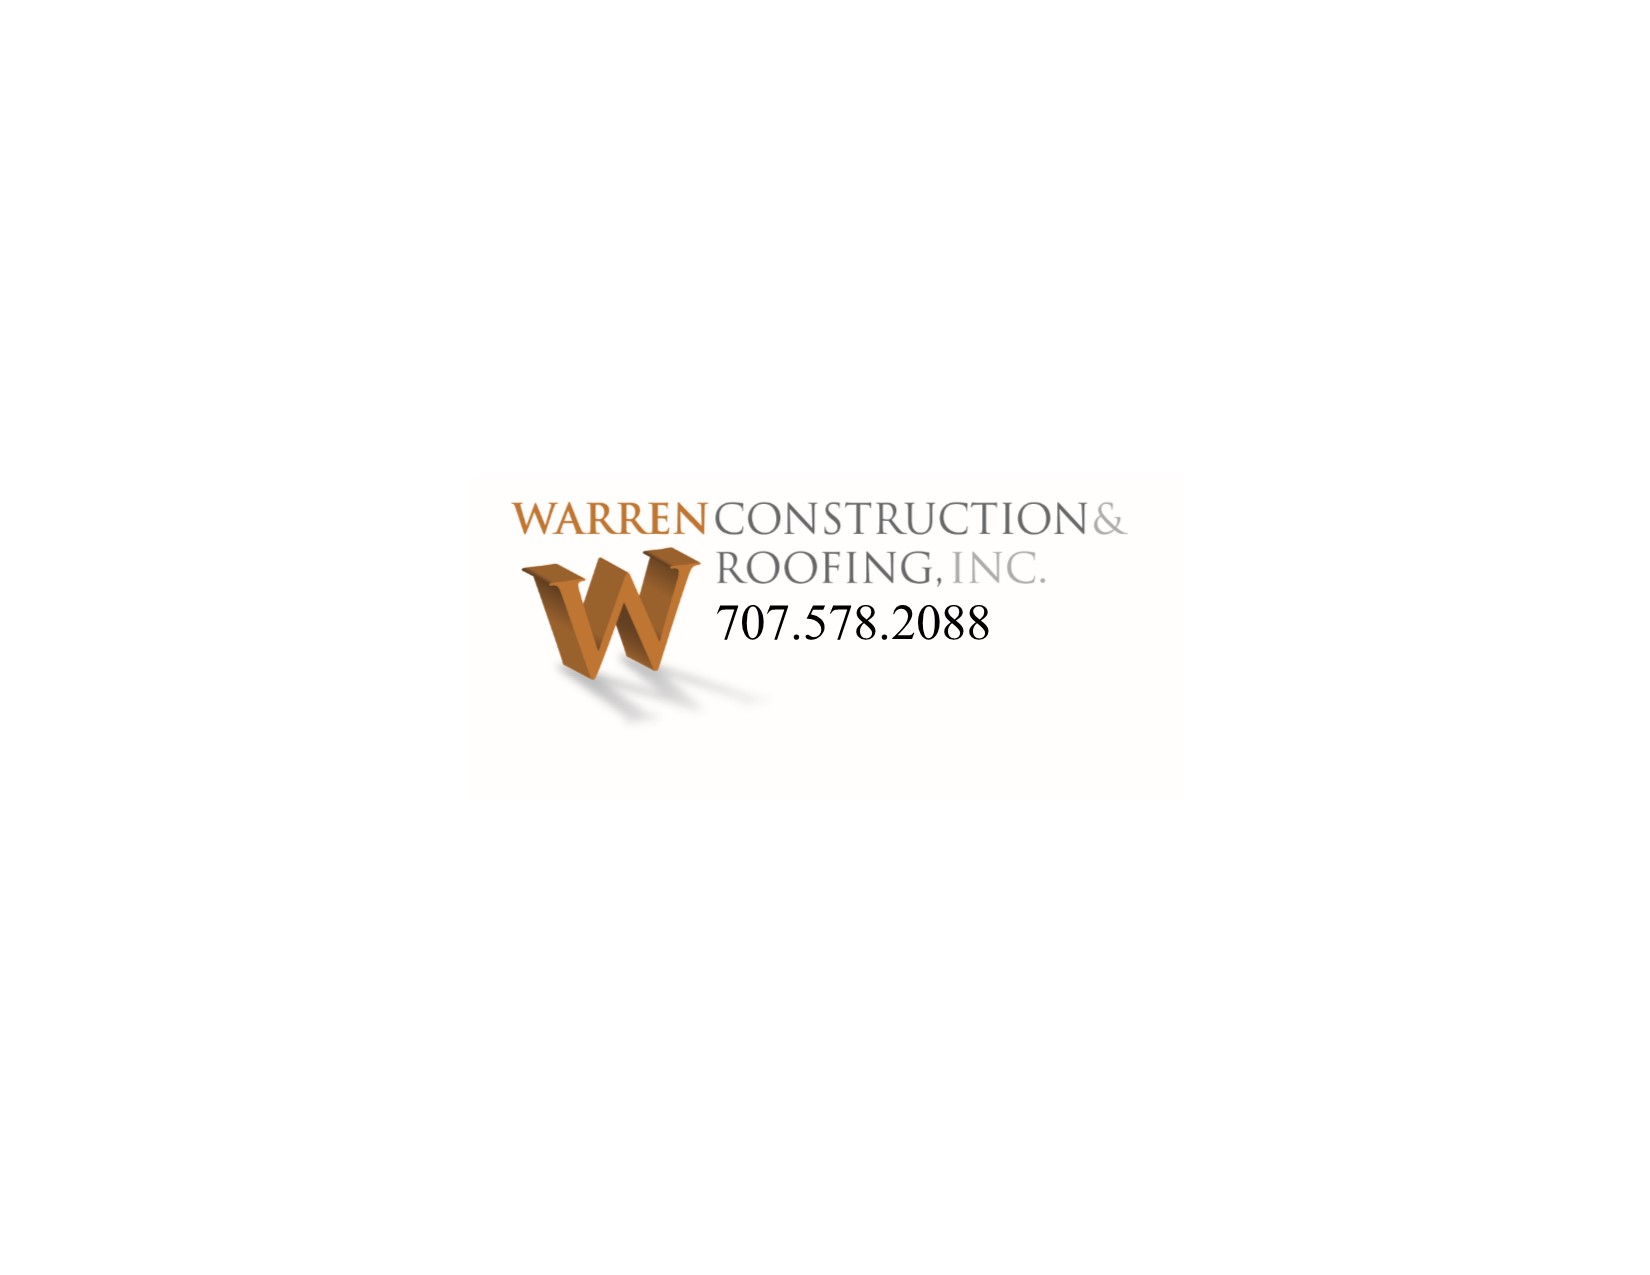 Warren Construction & Roofing, Inc